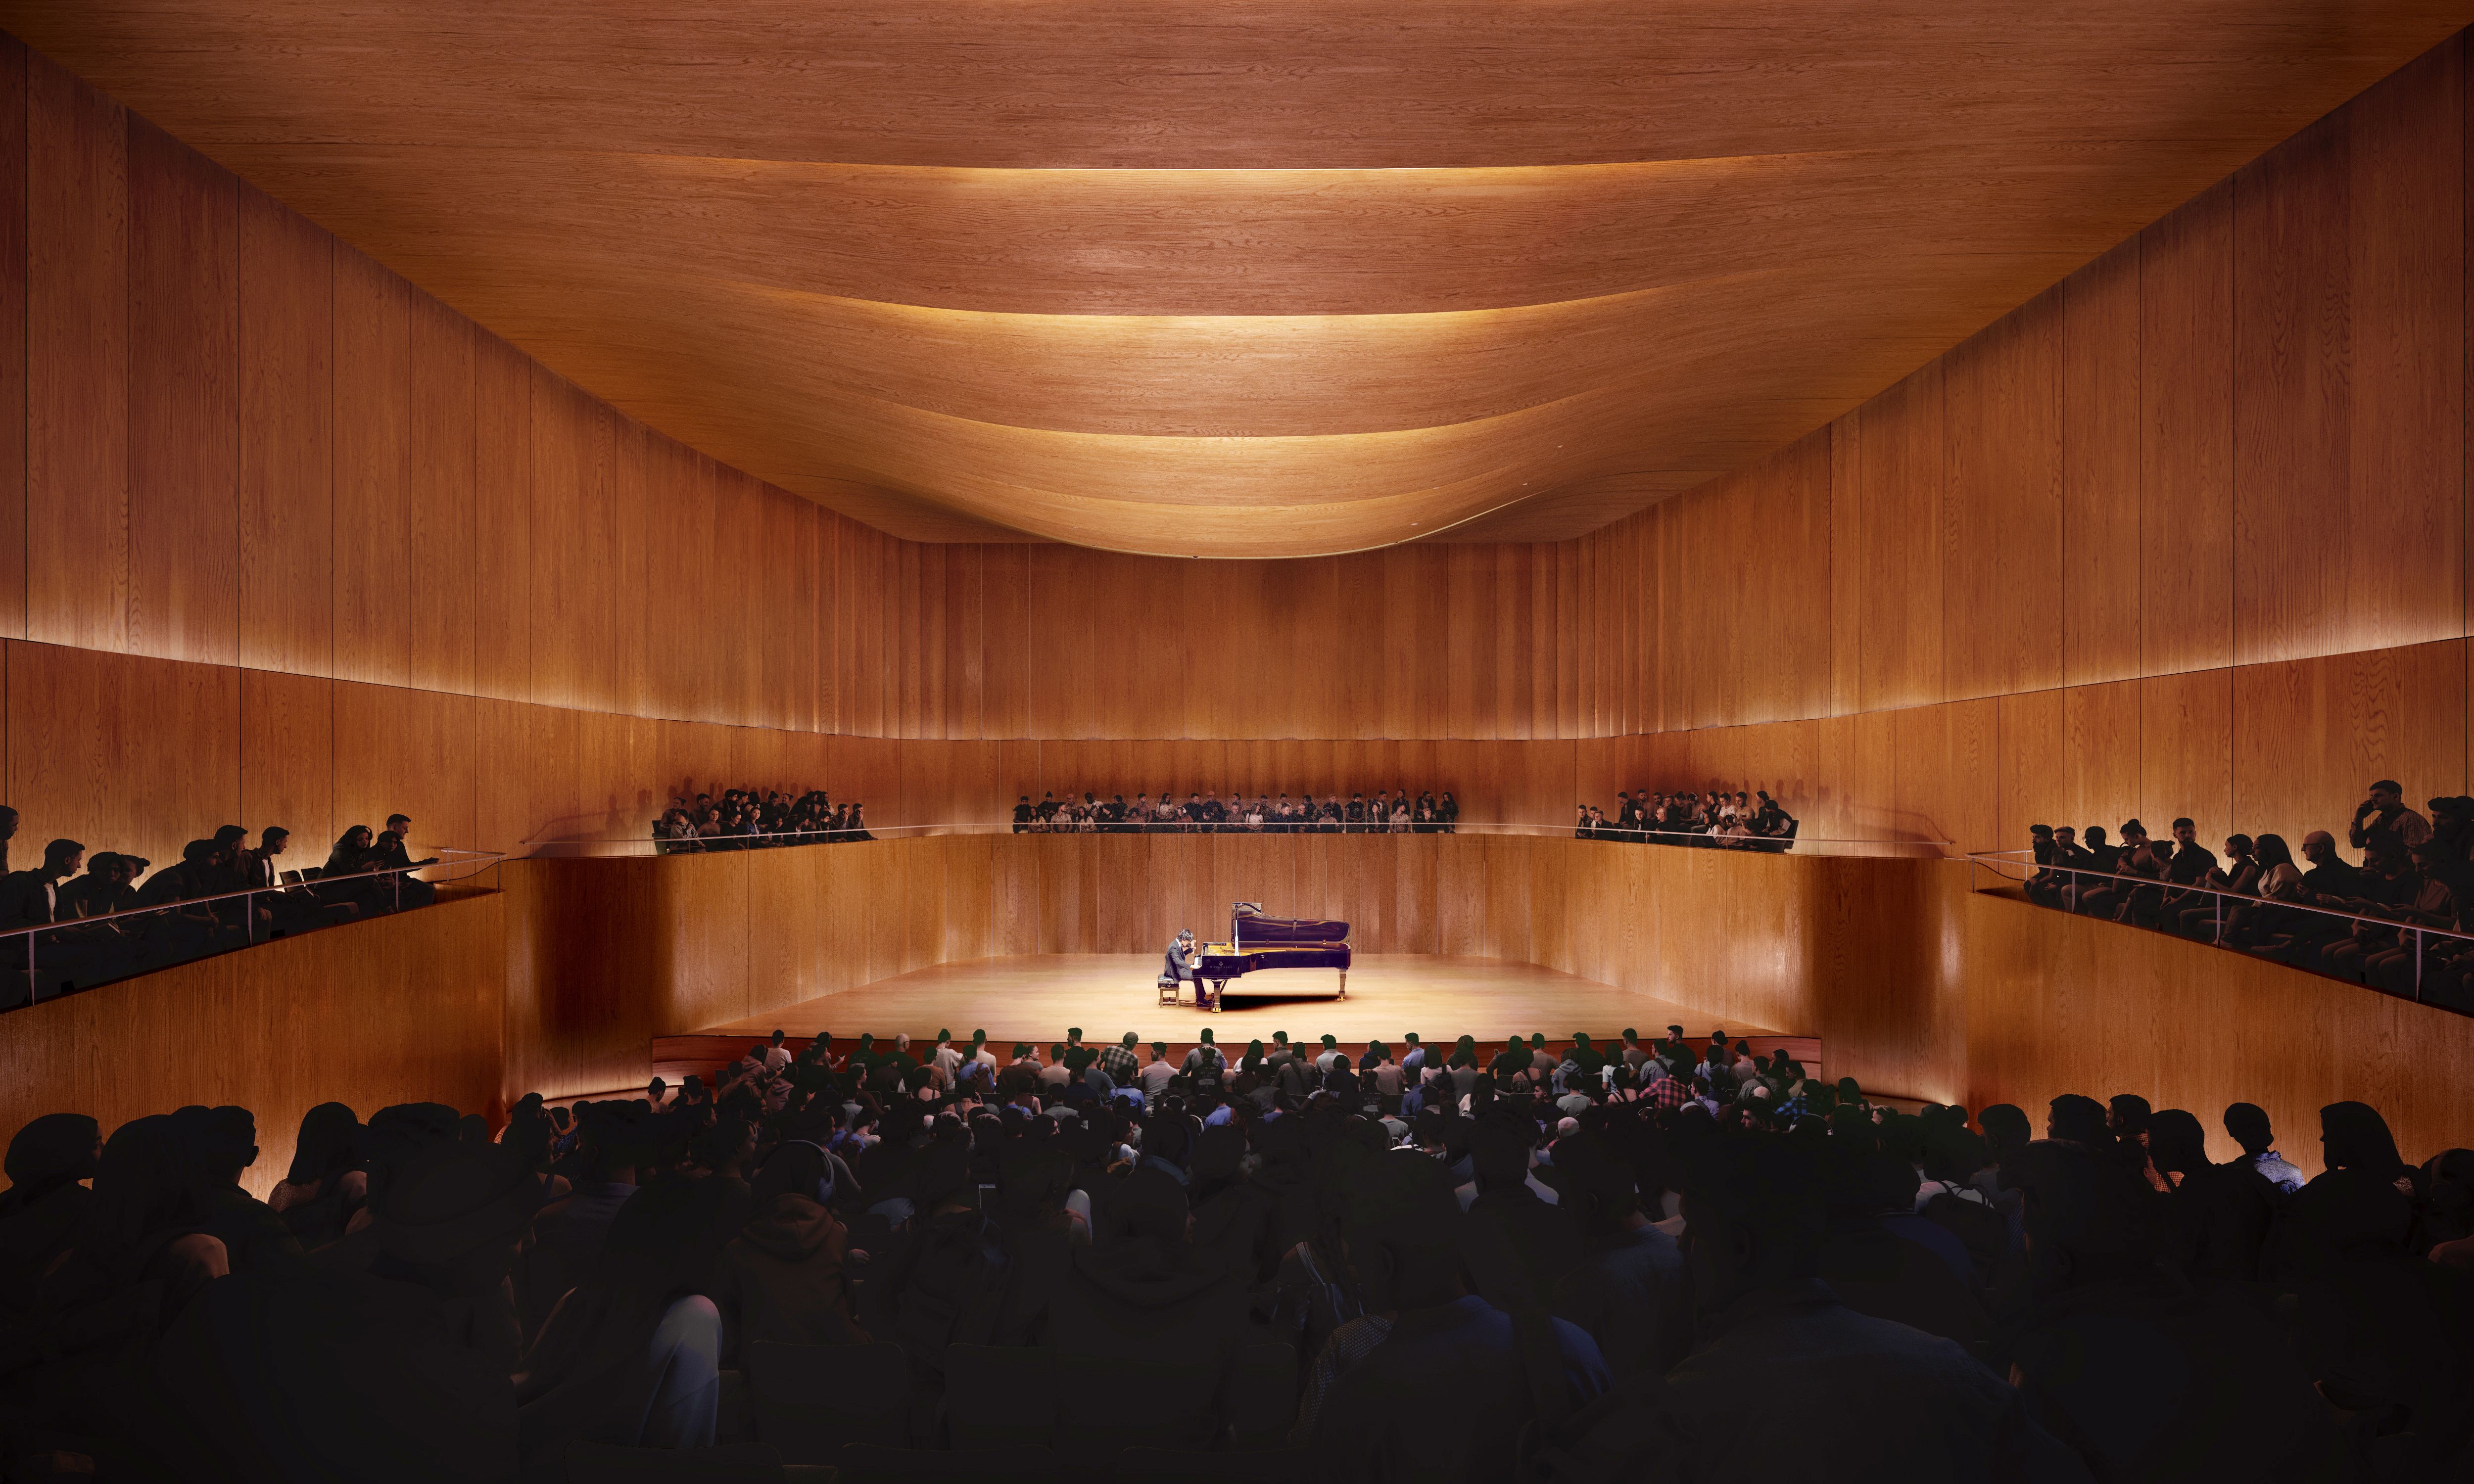 Großer Konzertsaal des Carl Bechstein Campus